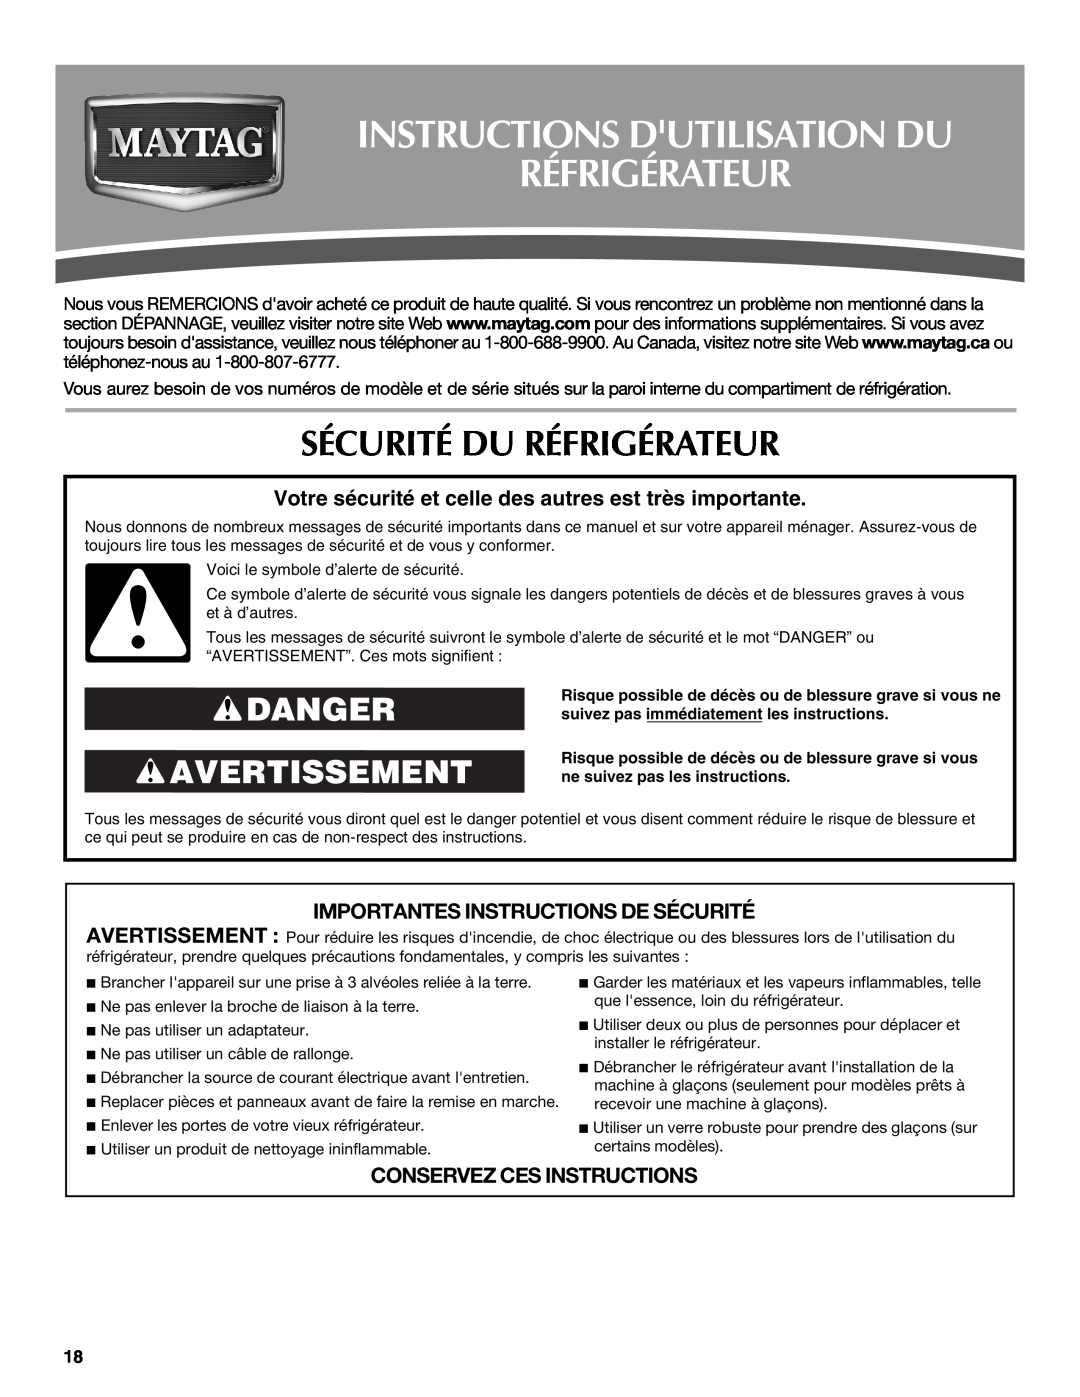 Maytag W10213158A, W10213157A Instructions Dutilisation Du Réfrigérateur, Sécurité Du Réfrigérateur, Danger Avertissement 